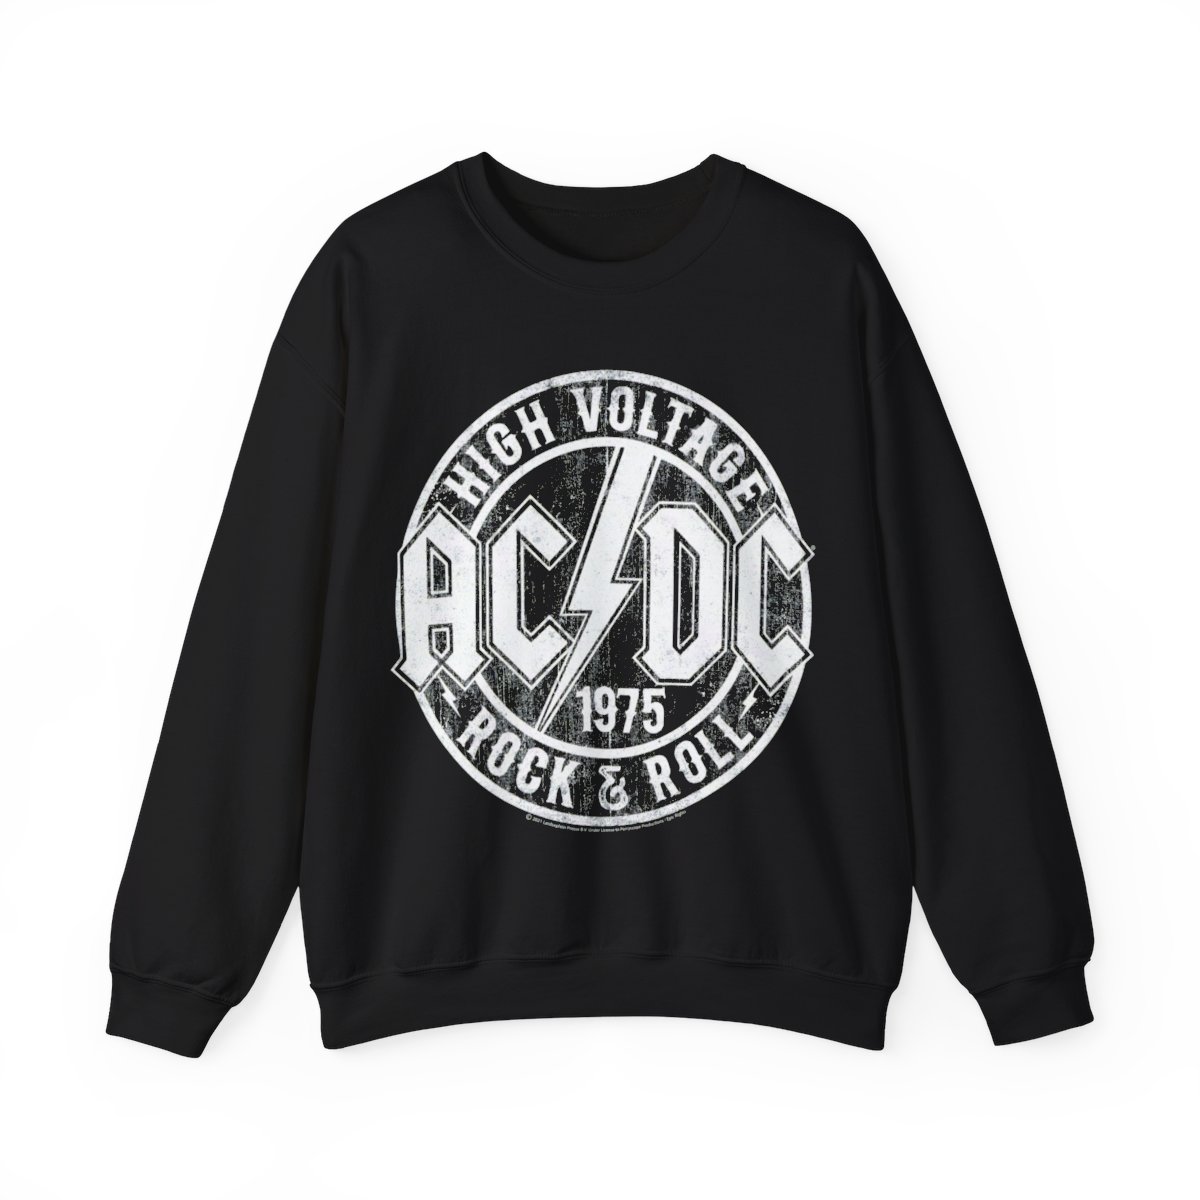 ACDC High Voltage Rock & Roll 1975 Shirt Unisex Heavy Blend Crewneck Sweatshirt